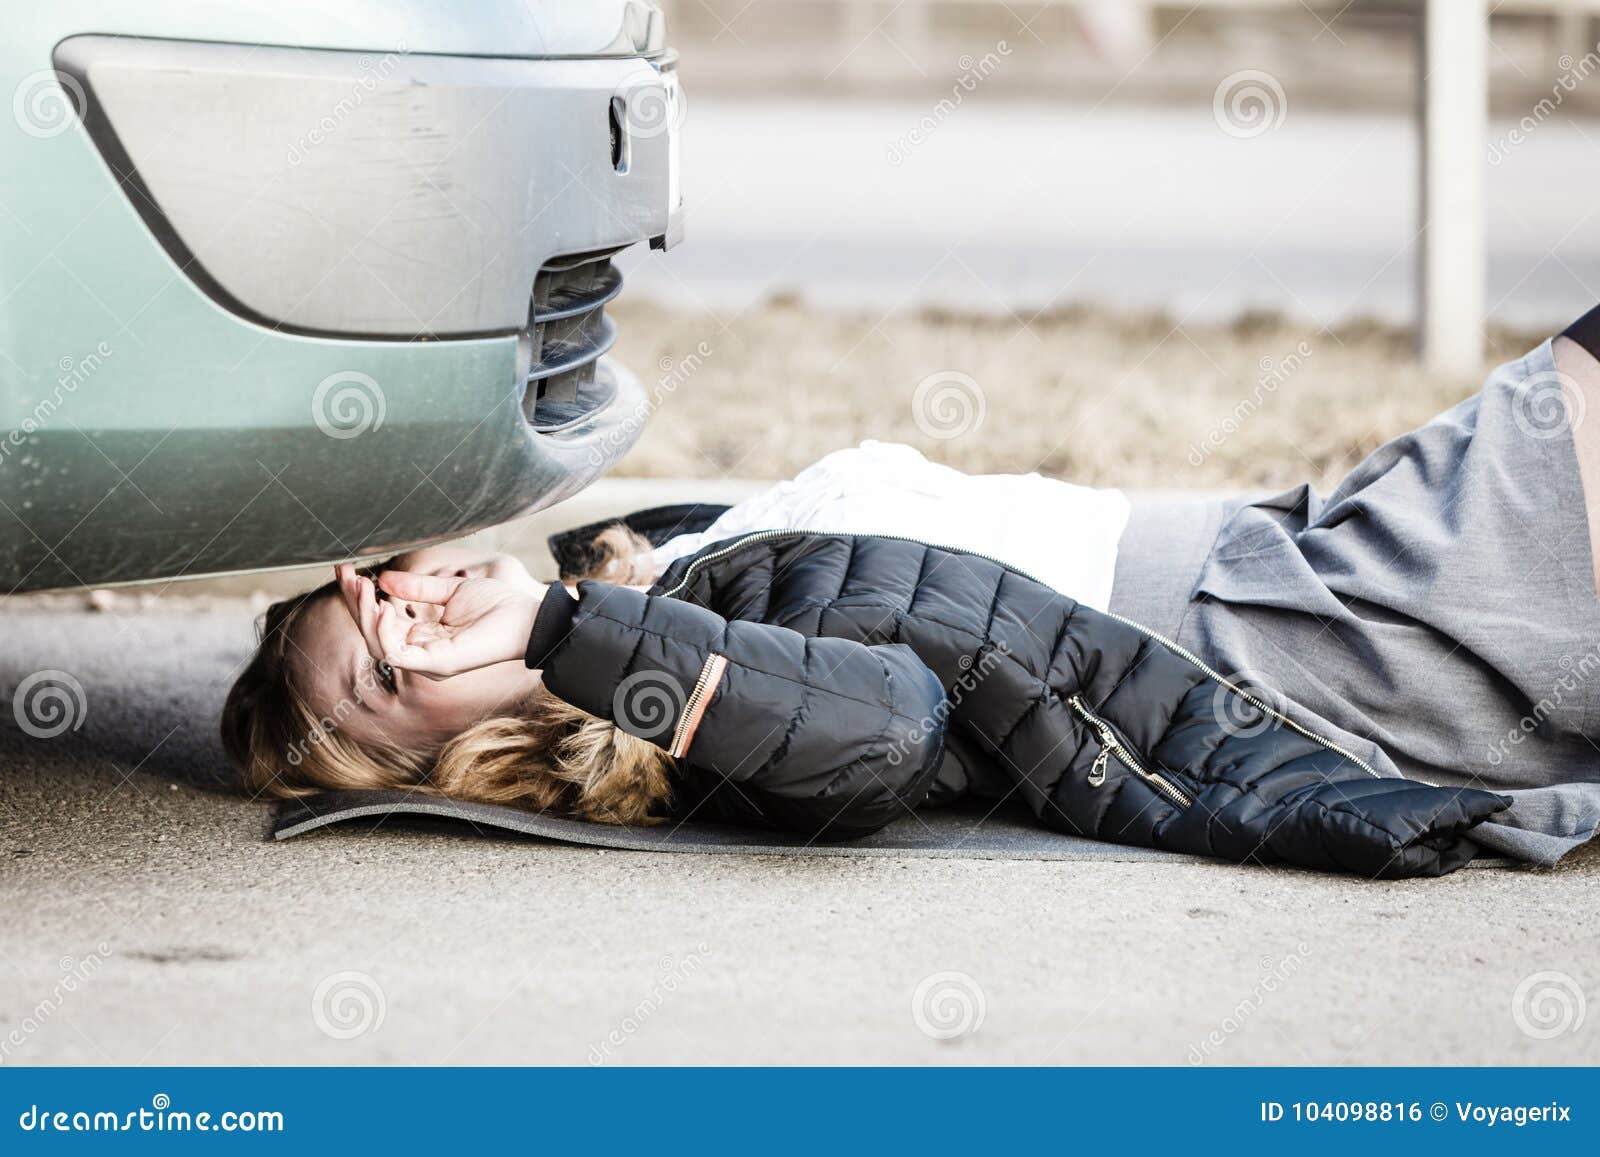 Женщина разбила машину. Девушка лежит под машиной. Фотографировать лёжа автомобиль.